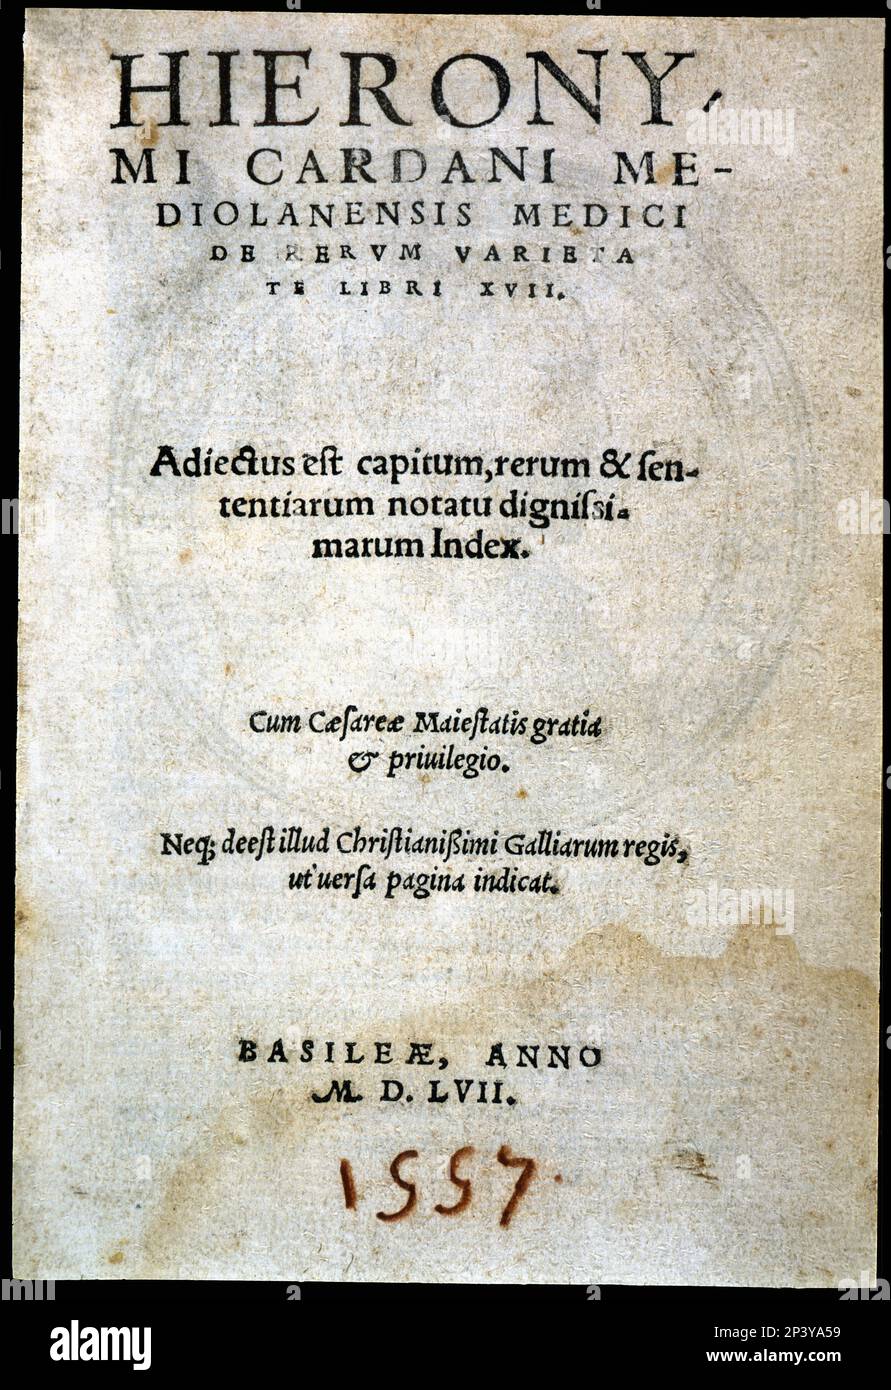 De rerum varietate libri XVII, couverture de l'édition 2nd, imprimé par Henricus Petrus de Bâle en 1557. Banque D'Images